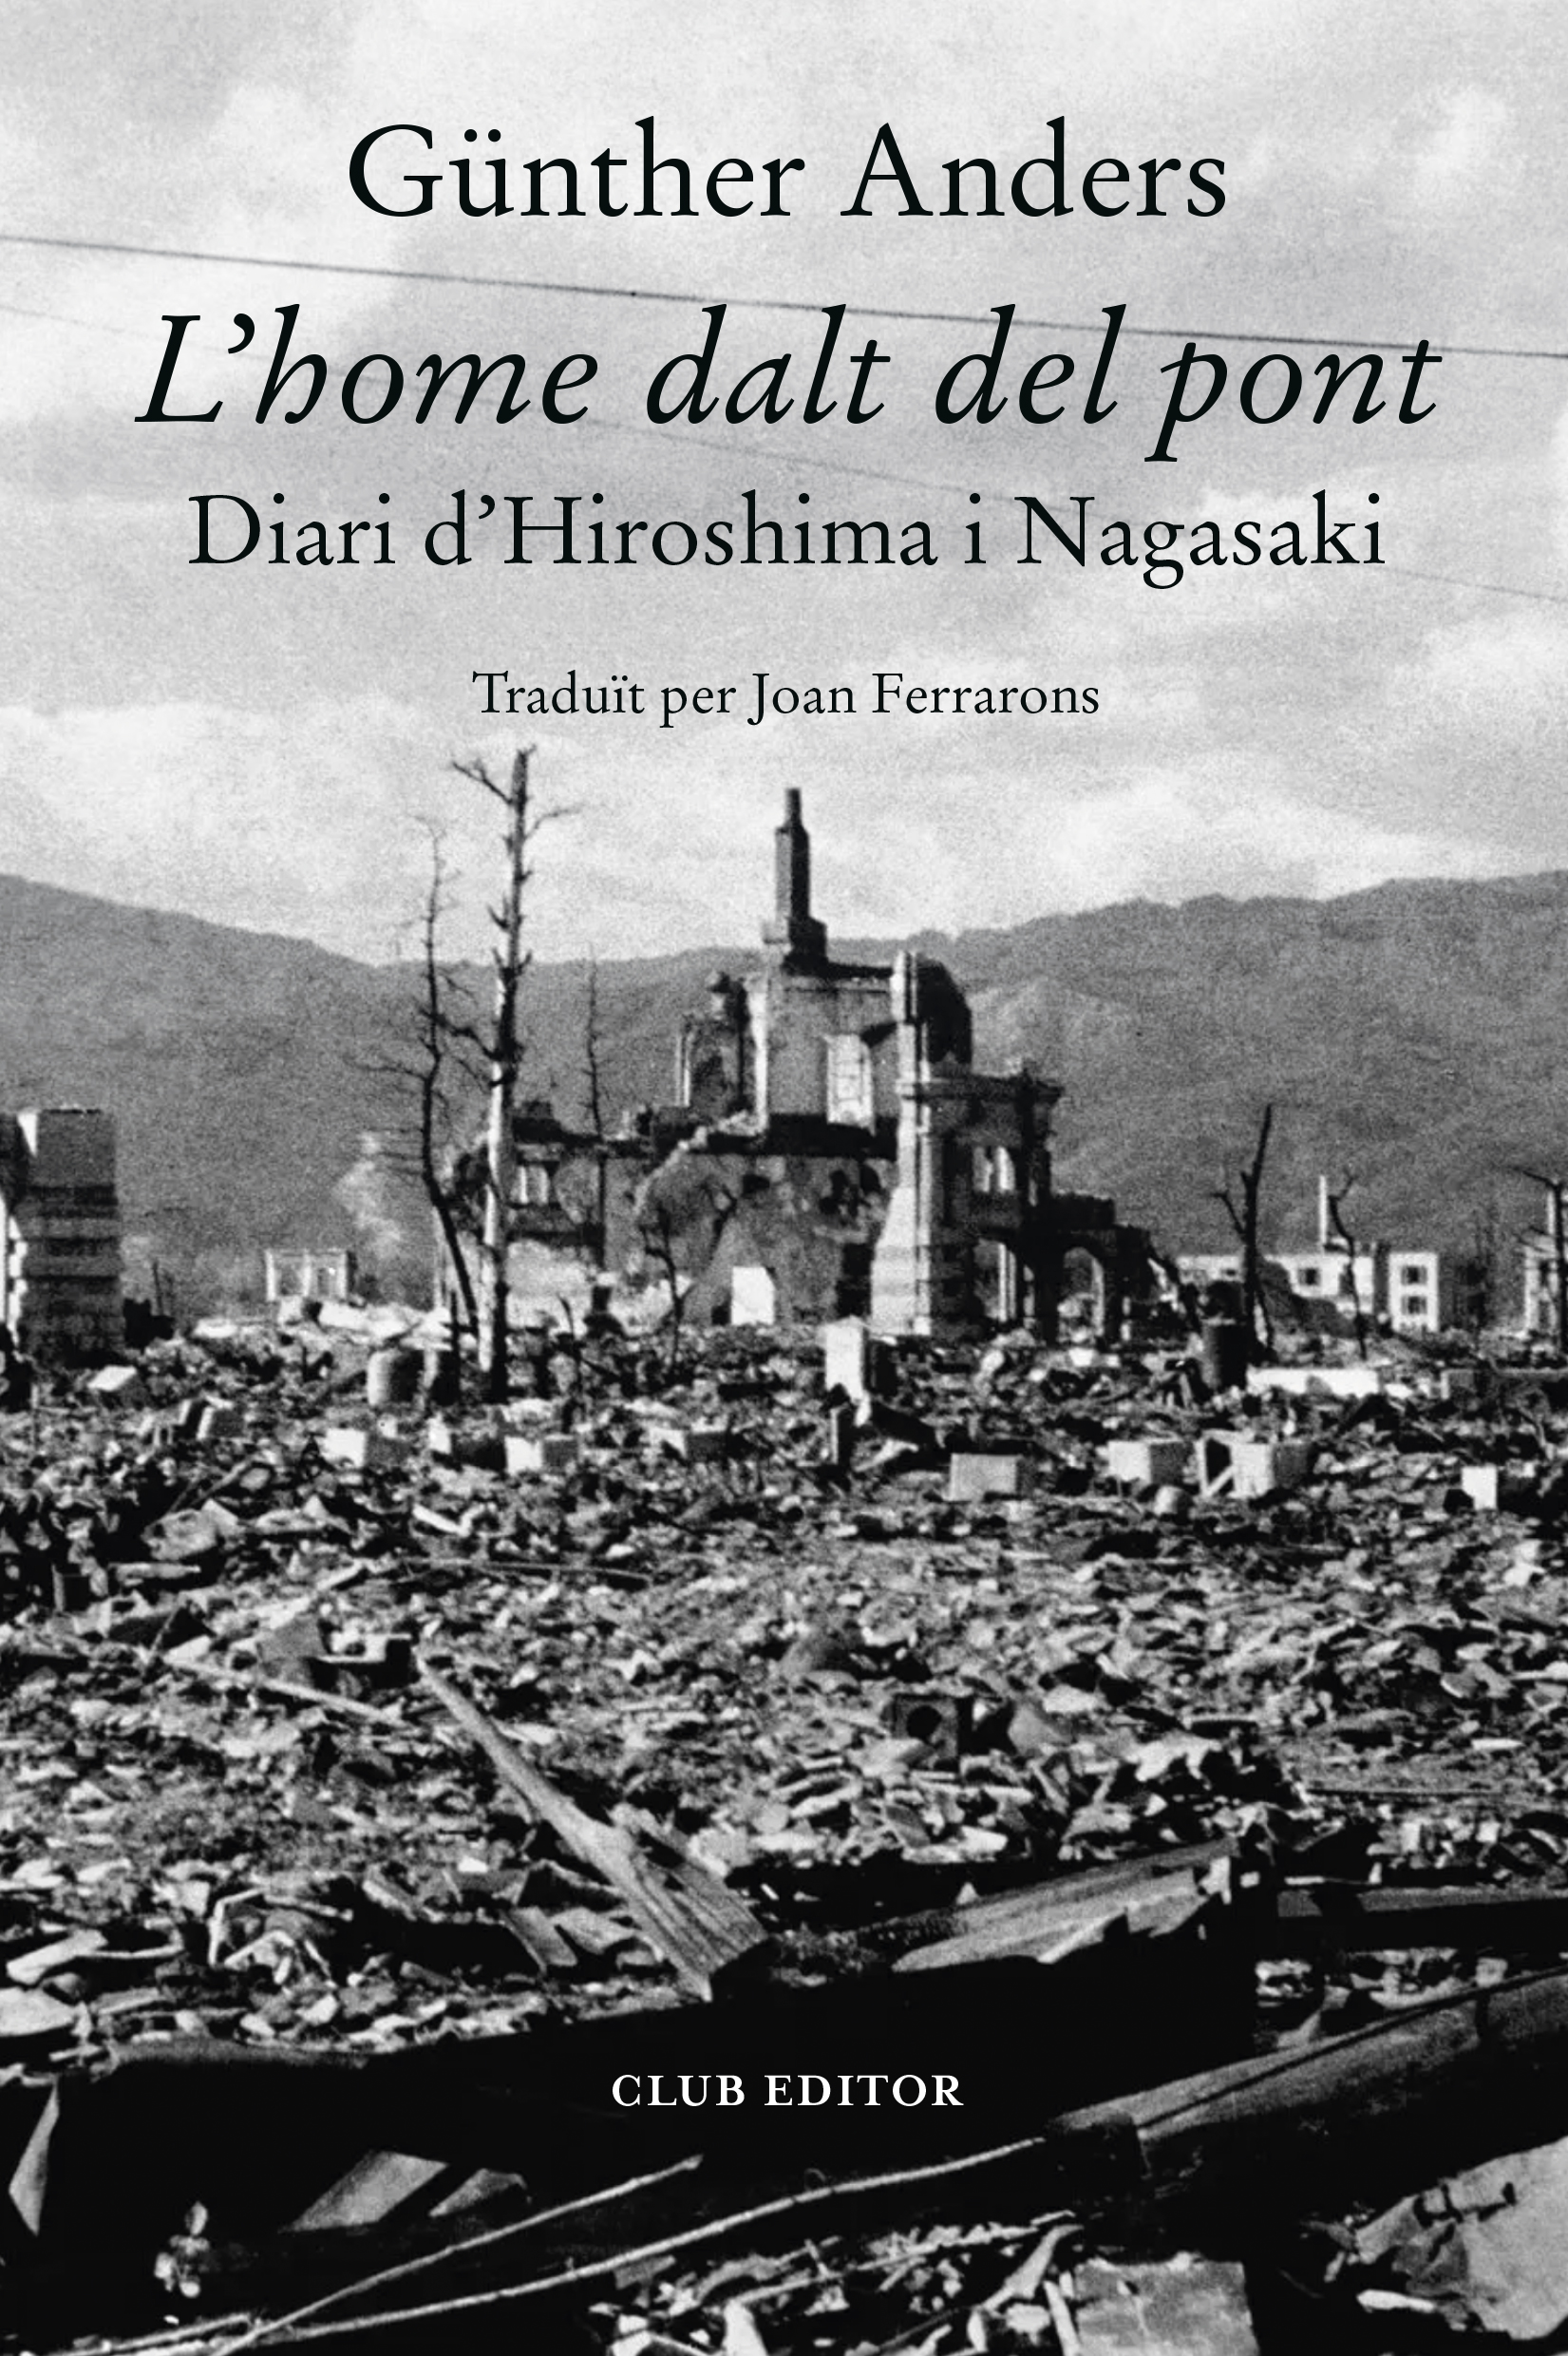 Portada del llibre «L'home dalt del pont», diari de visita a Hiroshima i Nagasaki 